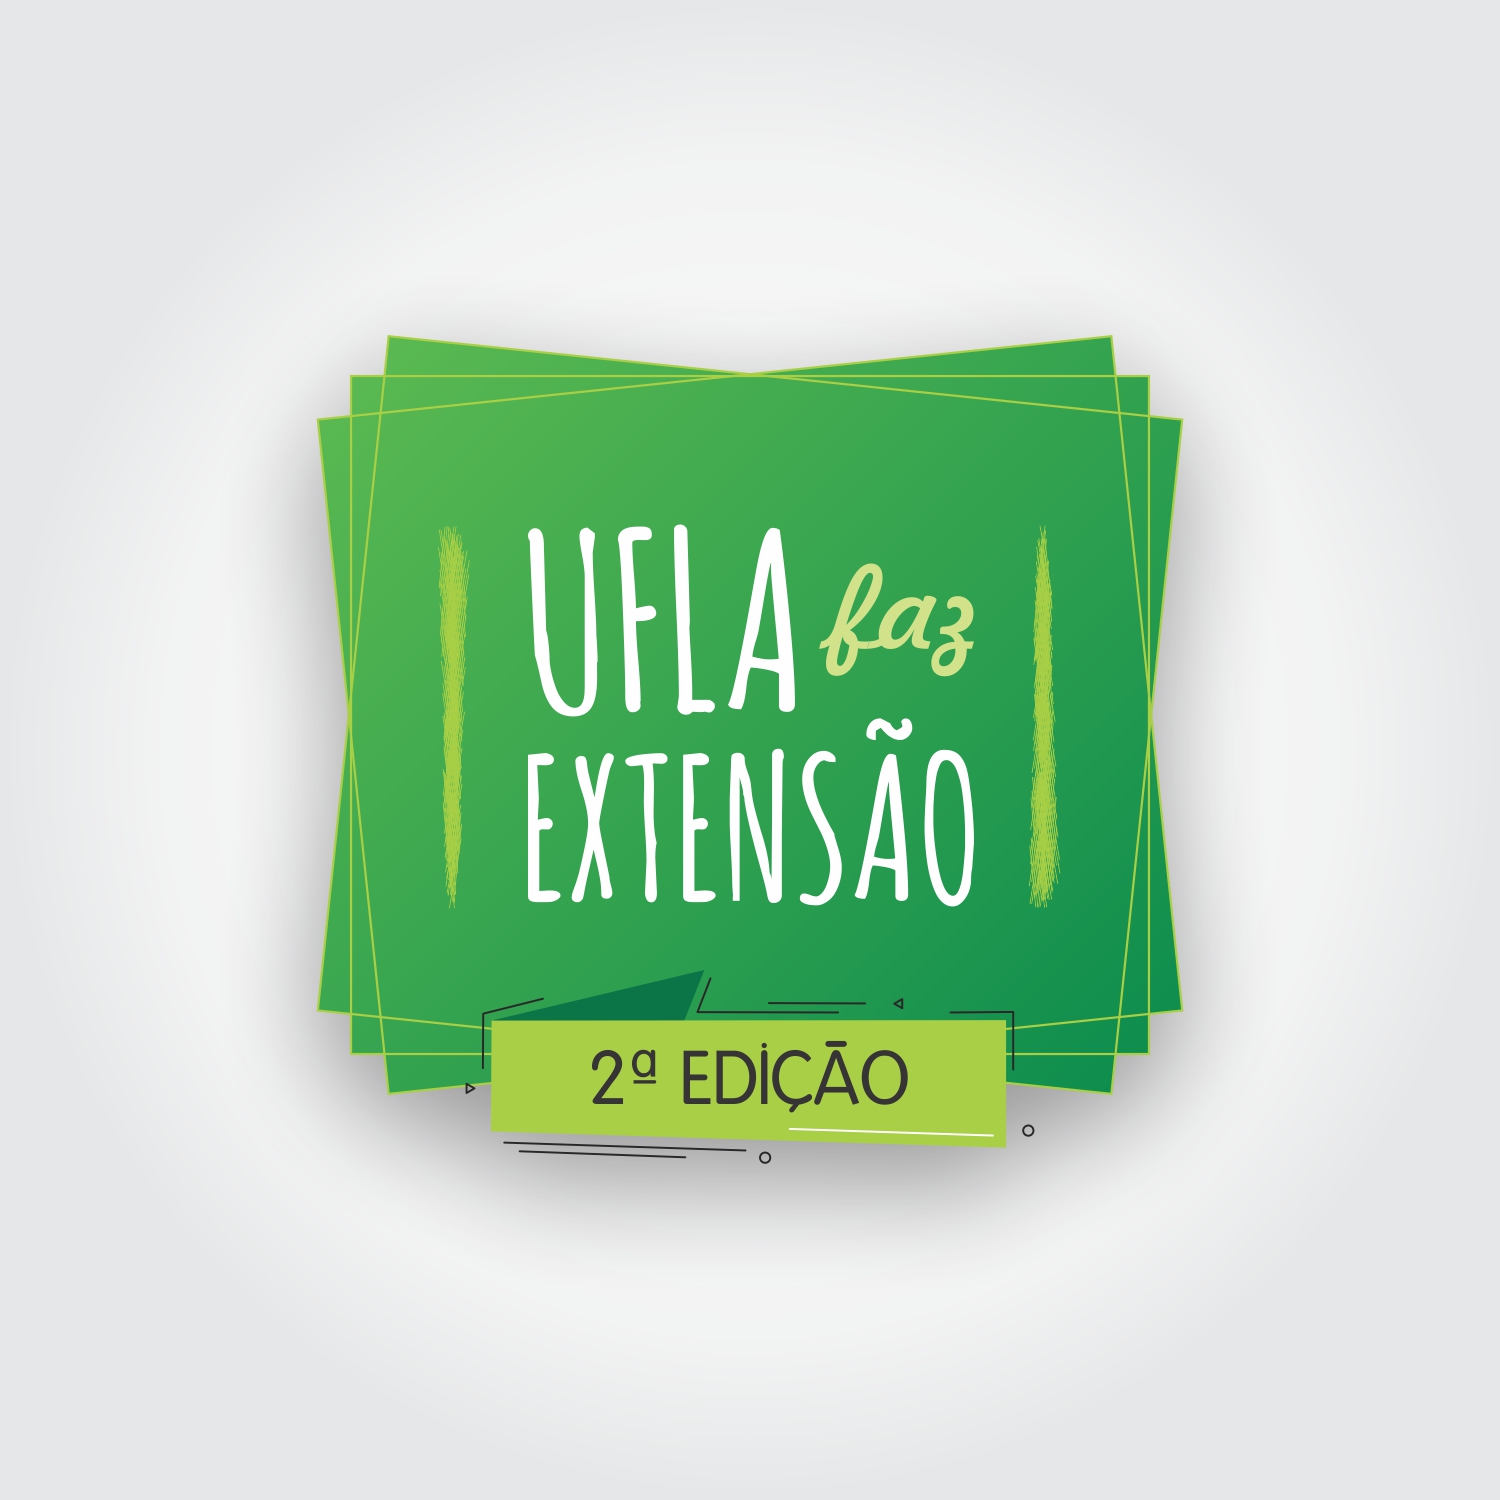 Logo UFLA faz extensão 2